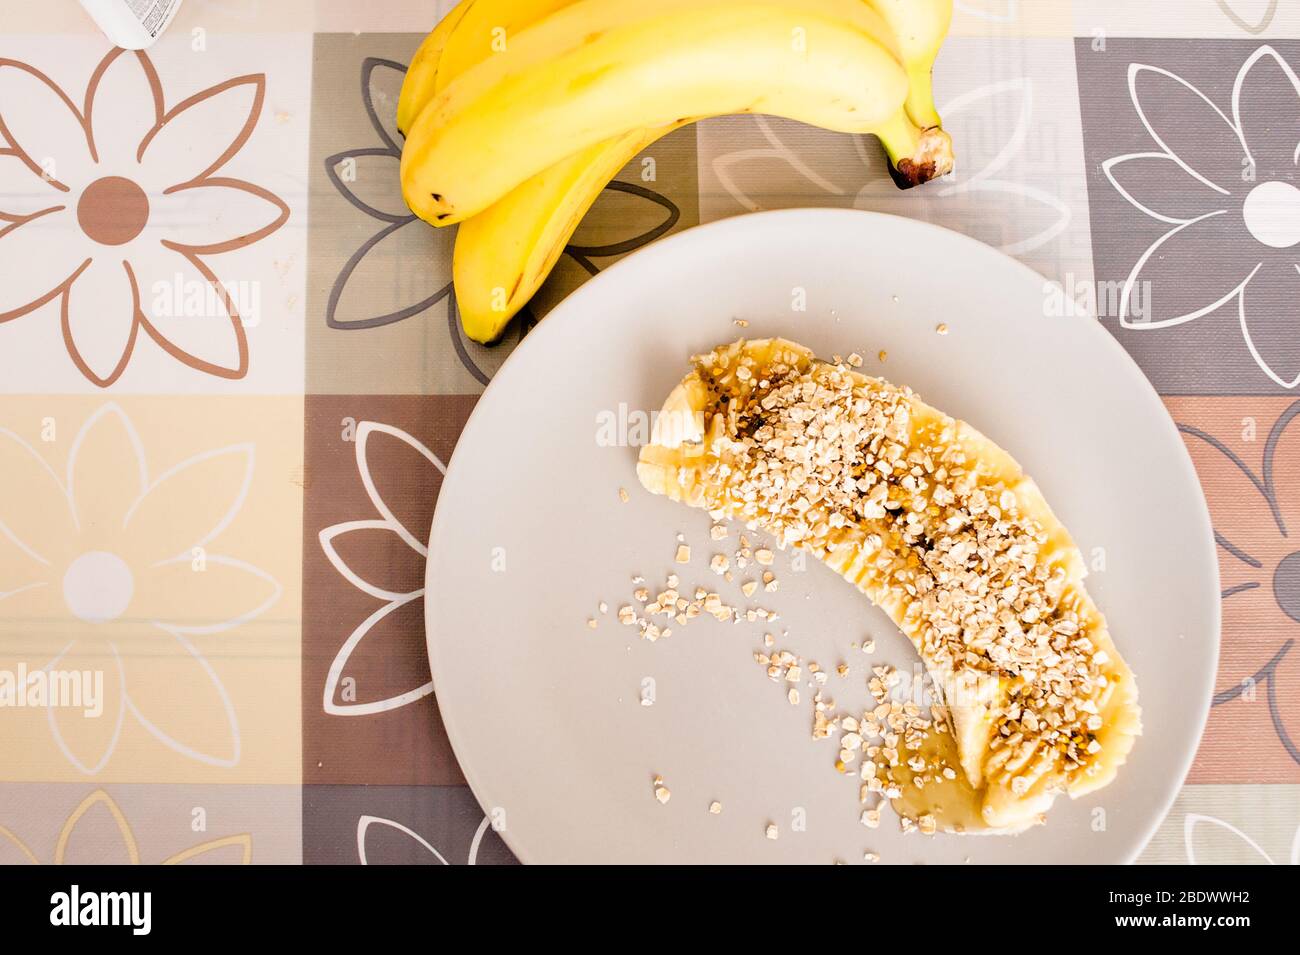 Hohe Winkelansicht einer Banane in Scheiben, die mit Hafer und Honig bedeckt ist. Stockfoto